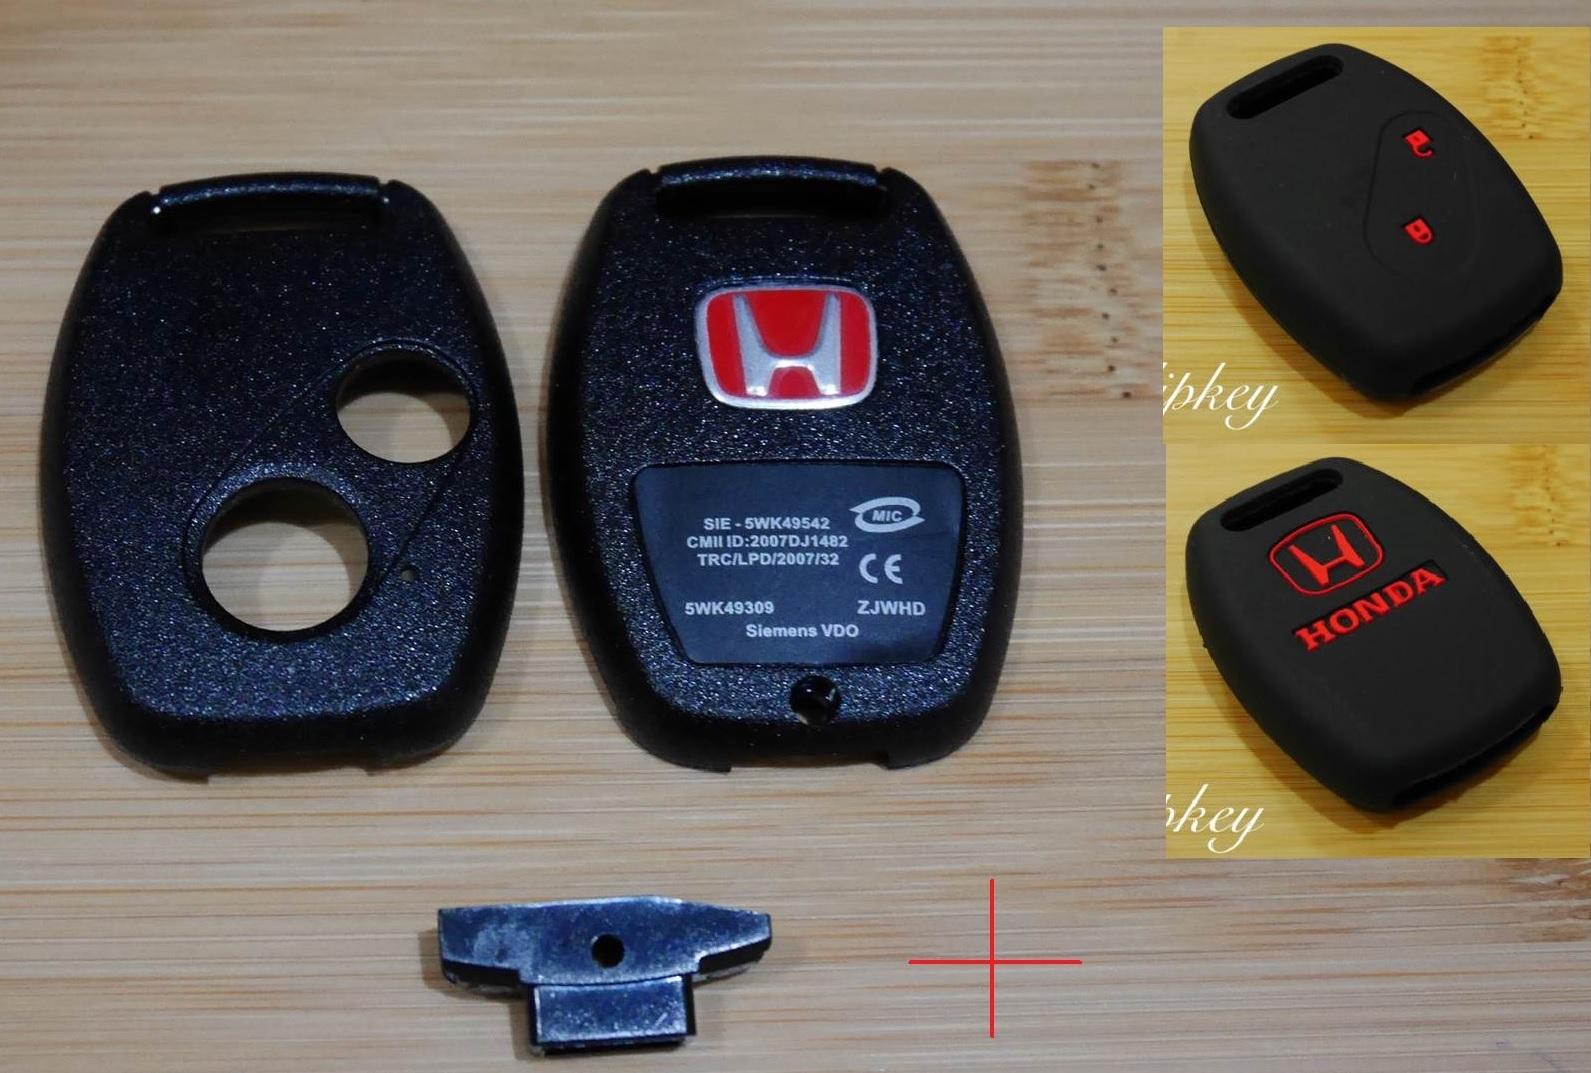 กรอบกุญแจ Honda แบบ 2 ปุ่ม  พร้อมโลโก้ H แดง + ซิลิโคนดำปุ่มแดง ใส่ดอกเดิมจากศูนย์ได้